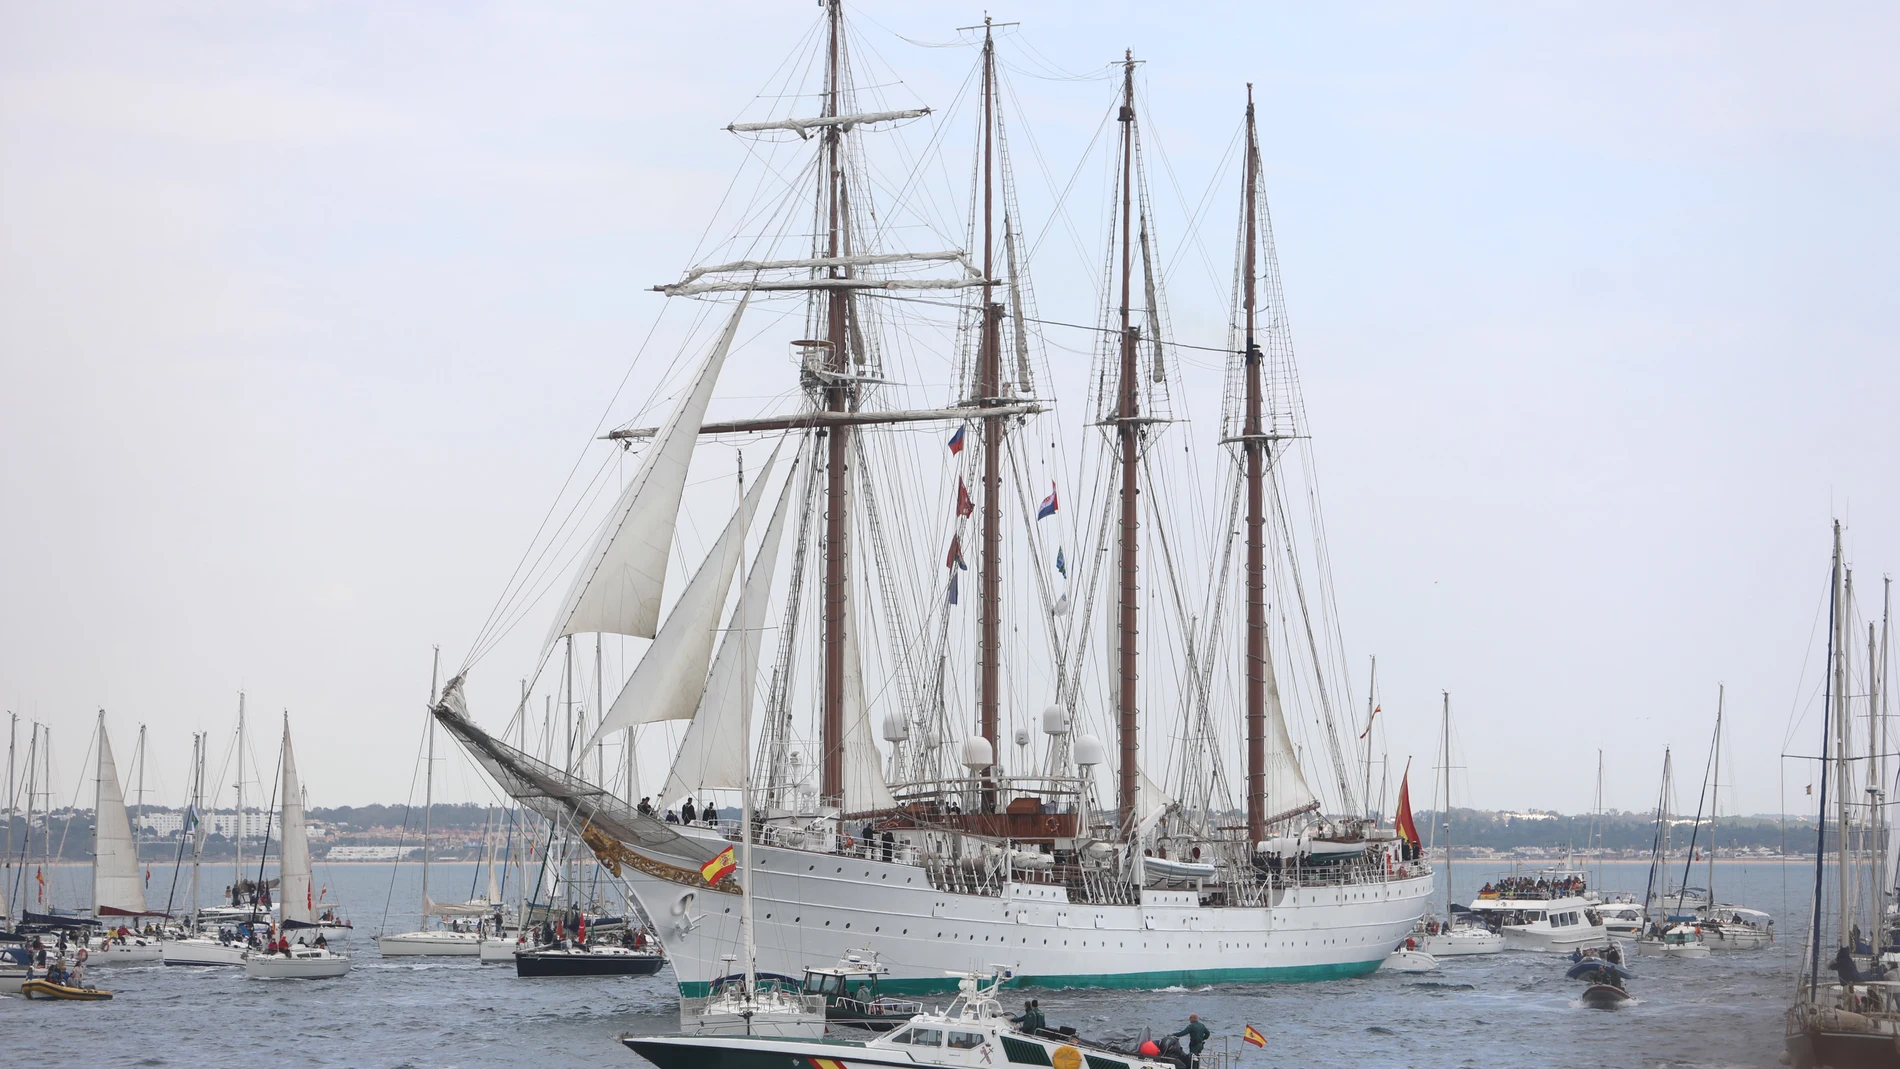 Cómo reservar entradas para visitar el buque Sebastián Elcano Barcelona?